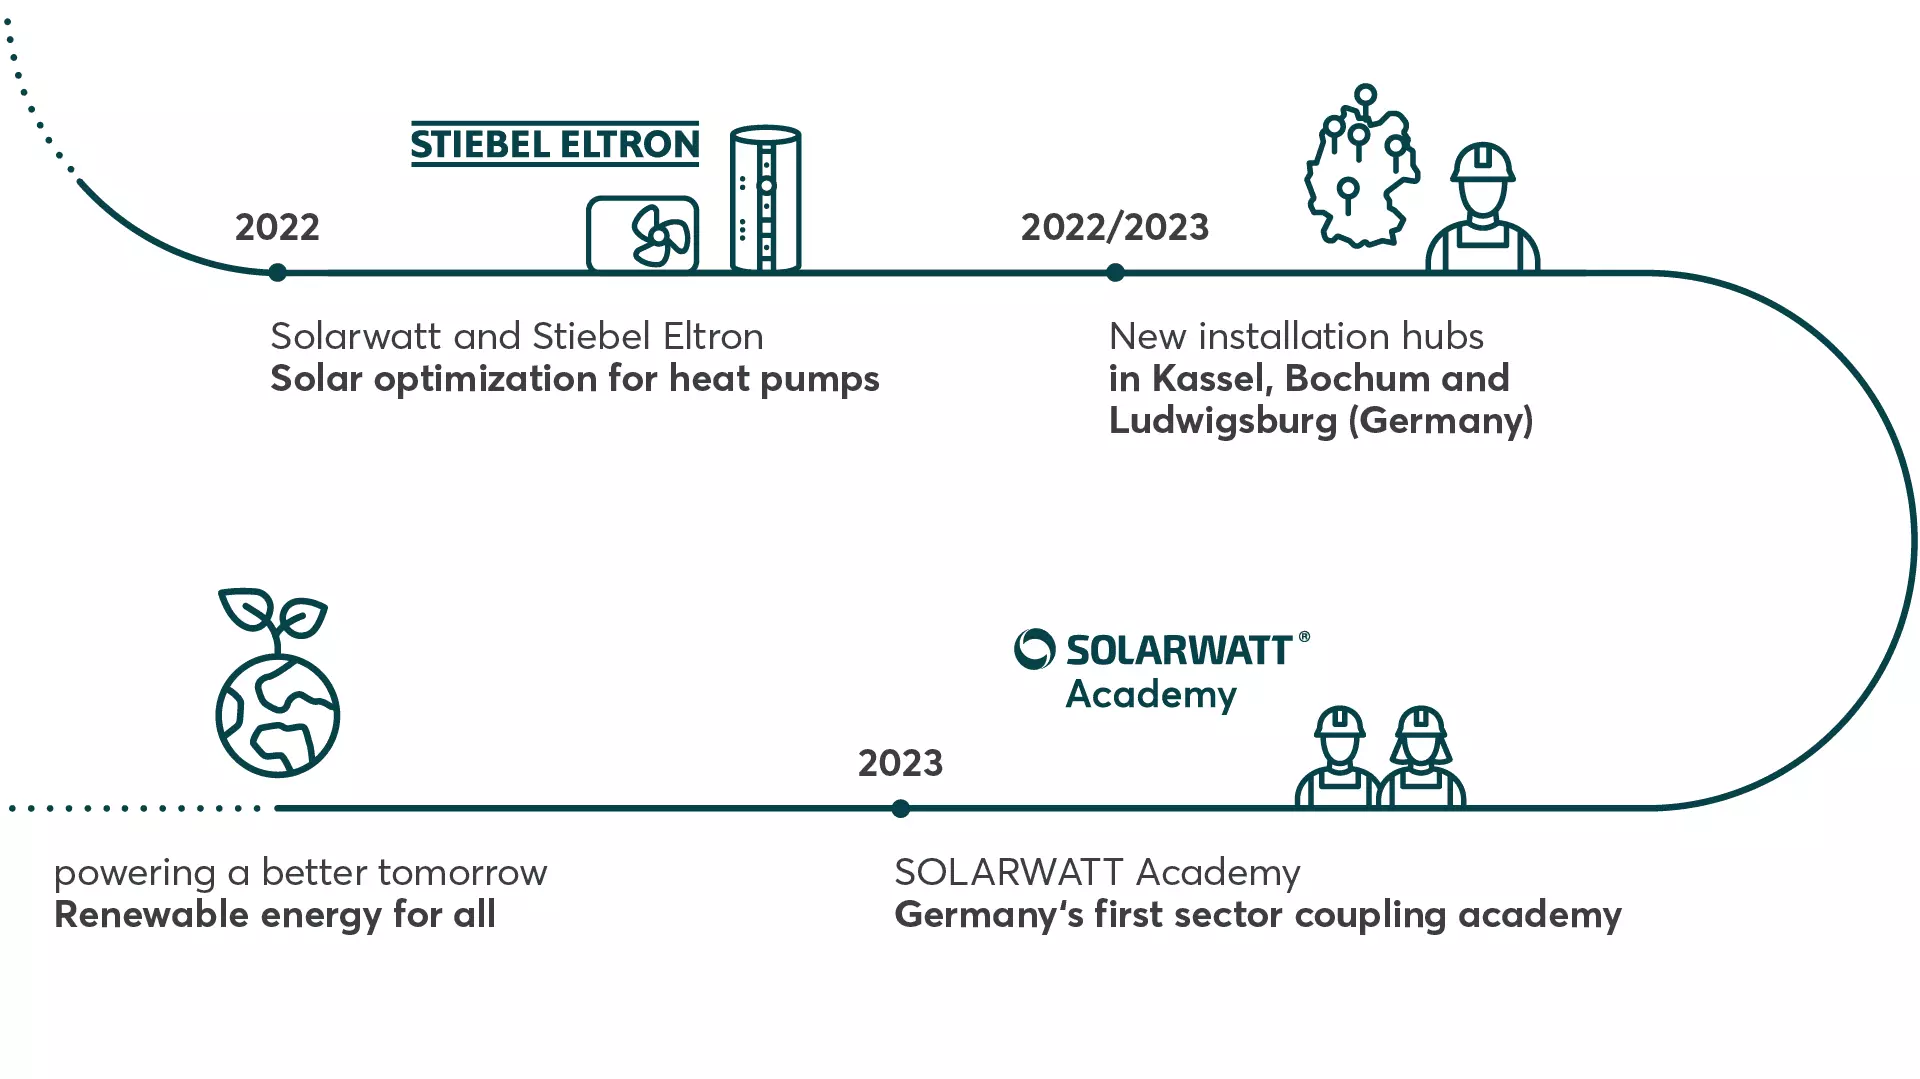 Solarwatt history 2022 - 2023